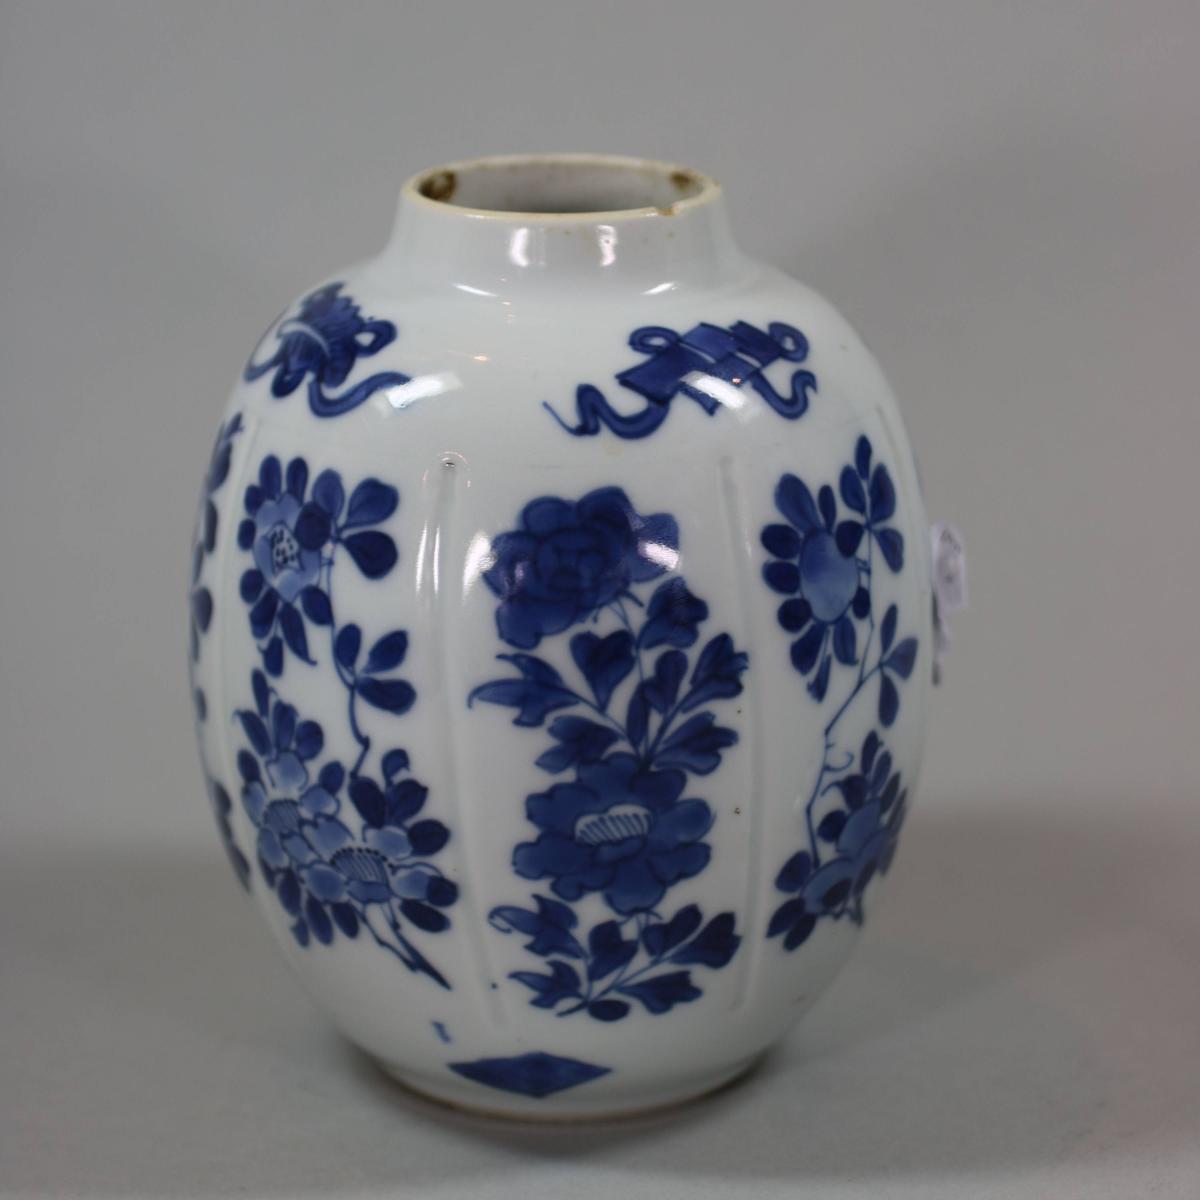 Alternative angle of Kangxi blue and white vase